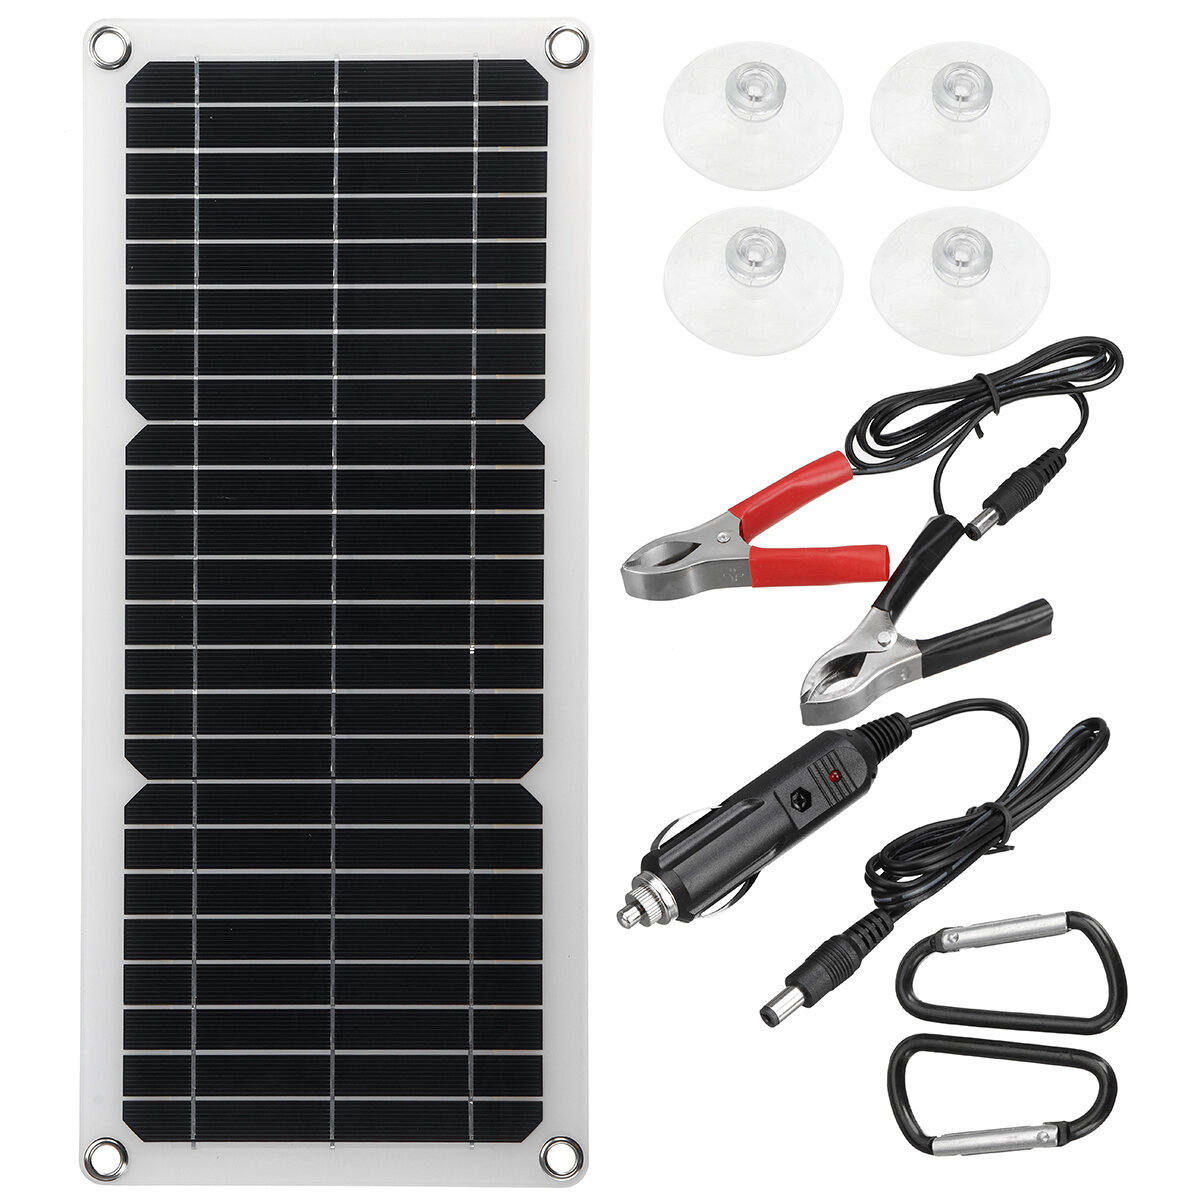 12 W de saída USB do painel solar para aprimorar carregadores Células solares Energia portátil de emergência para acampamento ao ar livre